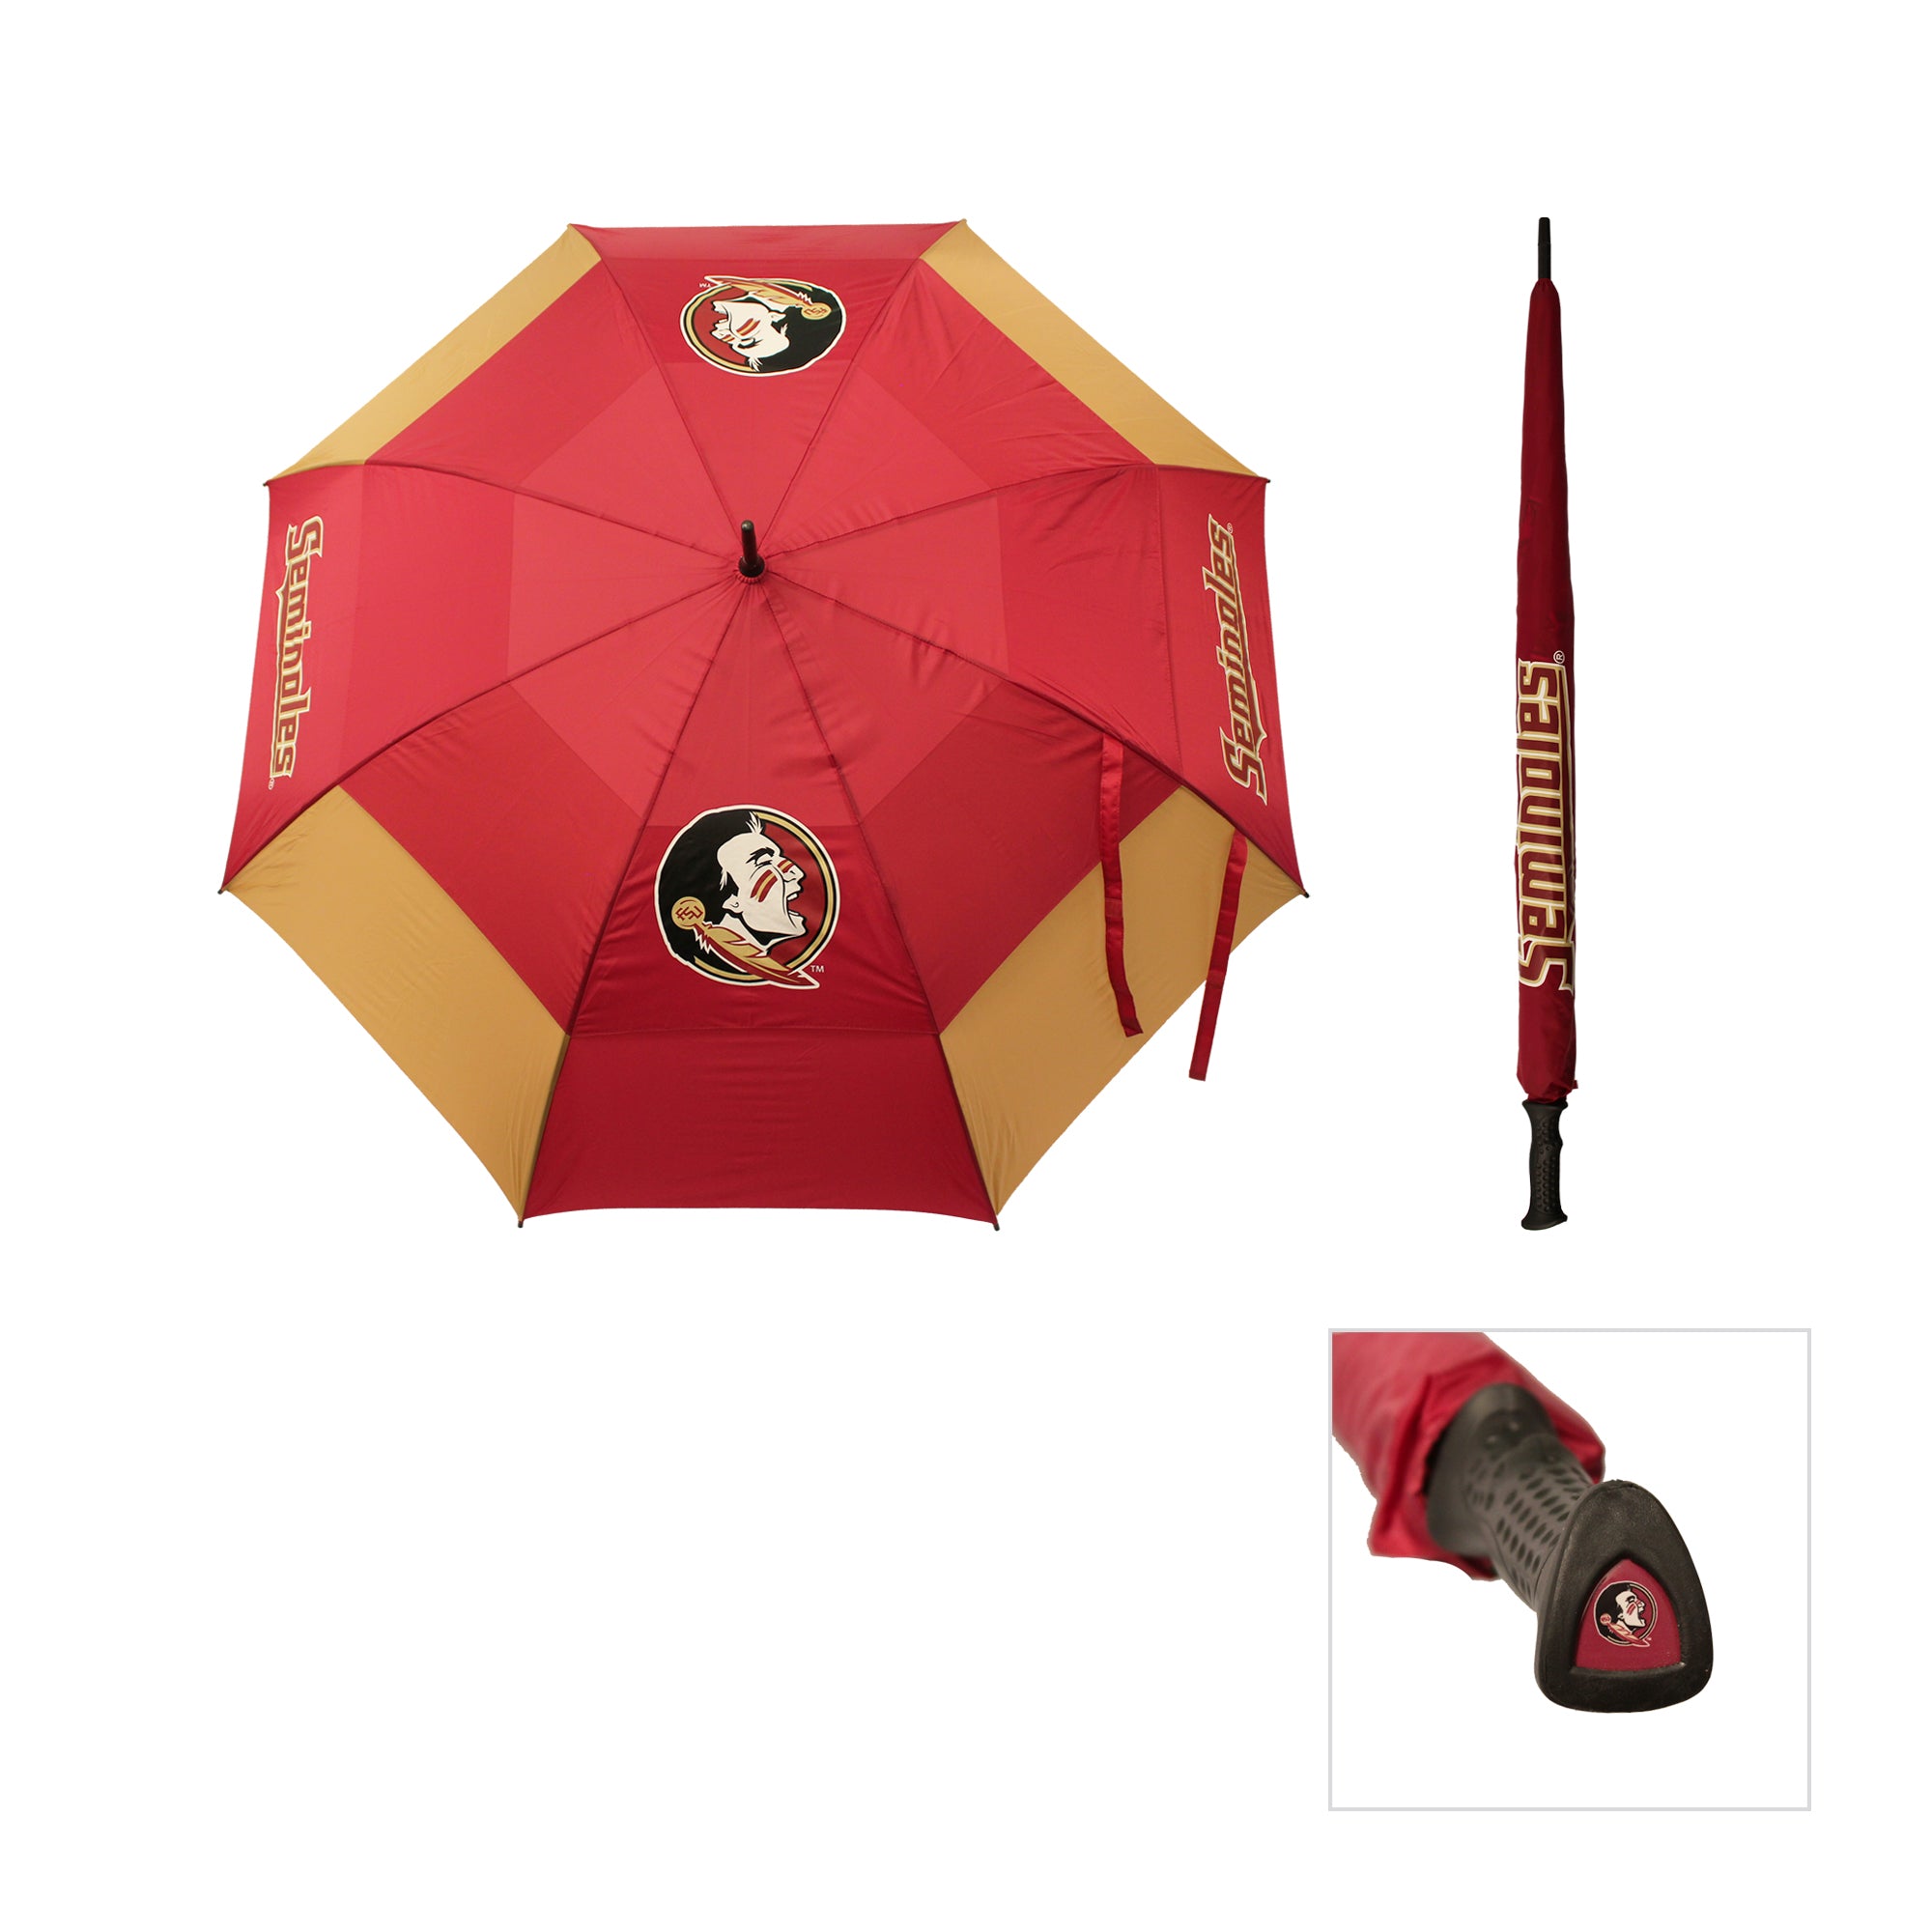 Florida State Seminoles Umbrella